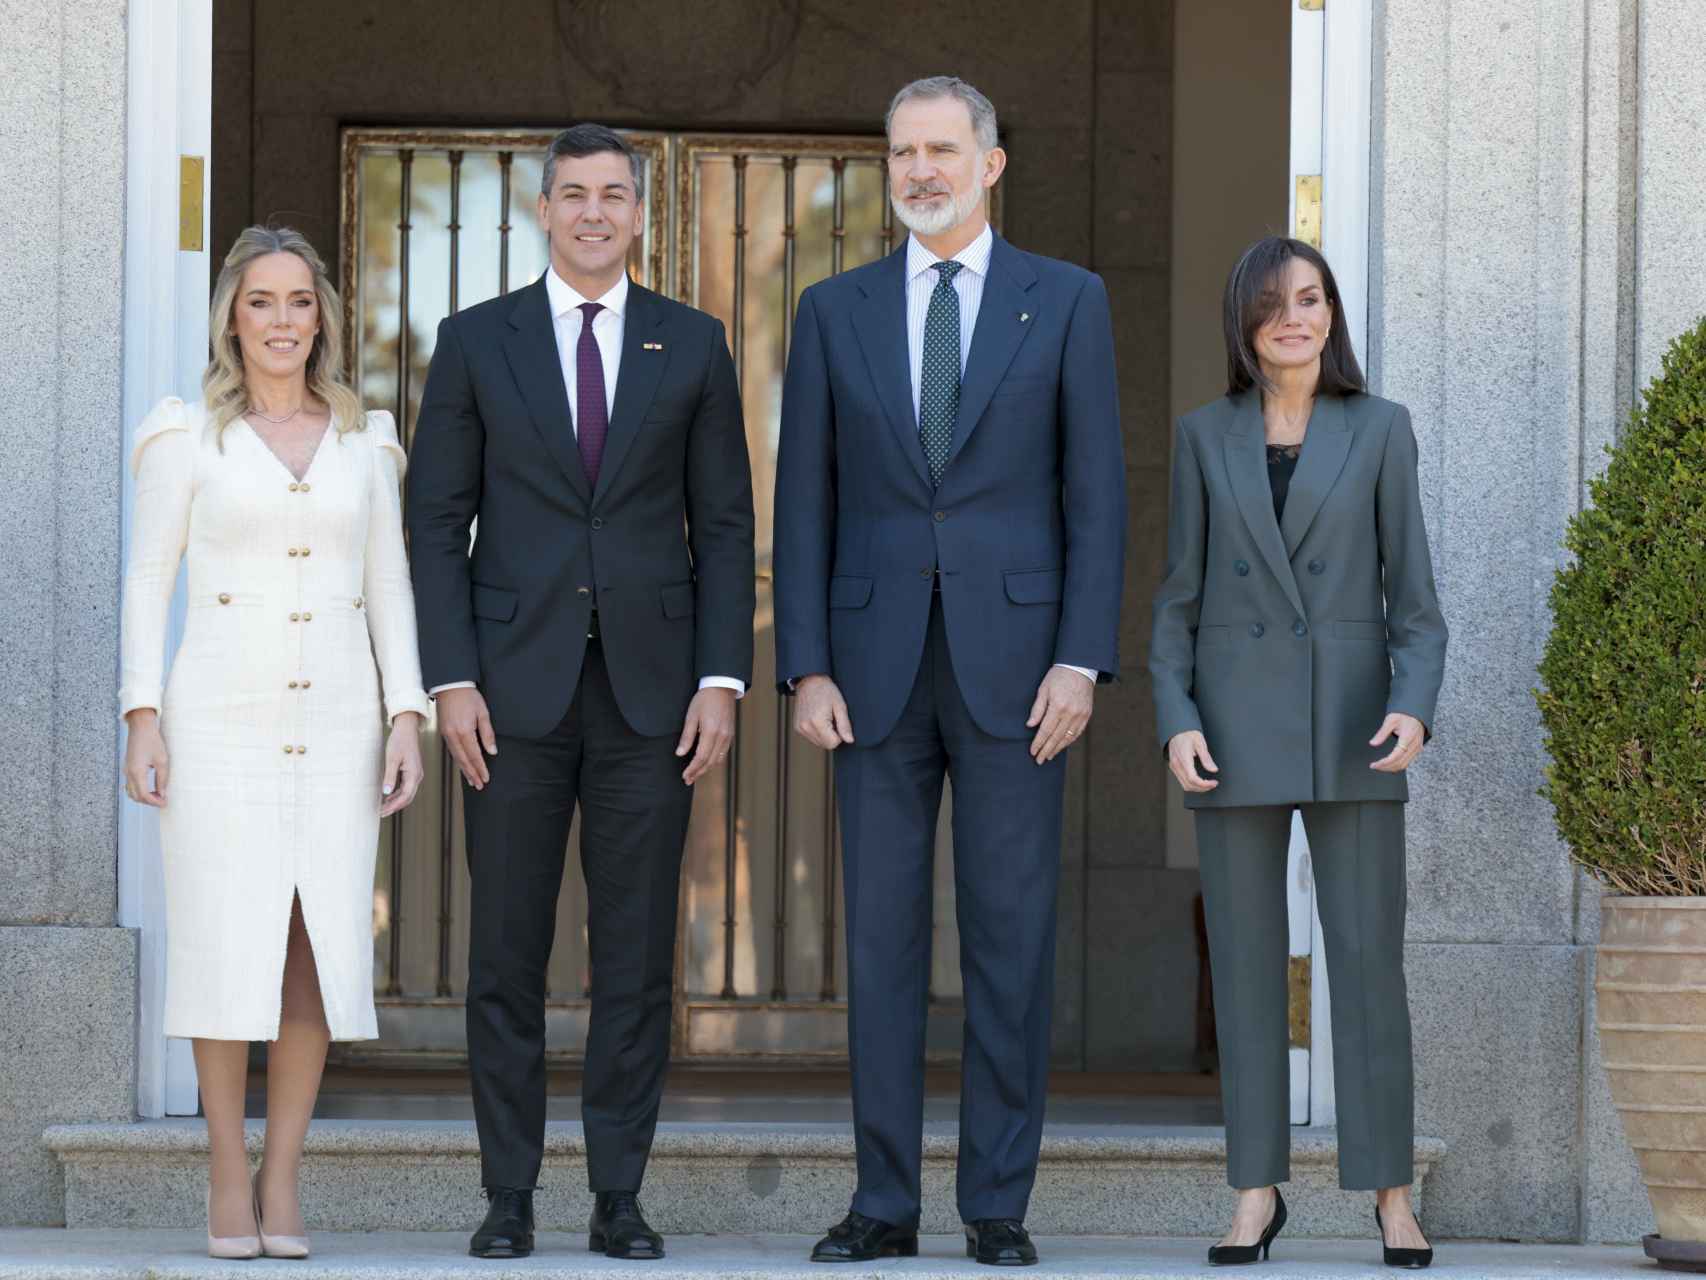 Los Reyes posan con el presidente de Paraguay y su esposa antes del almuerzo.